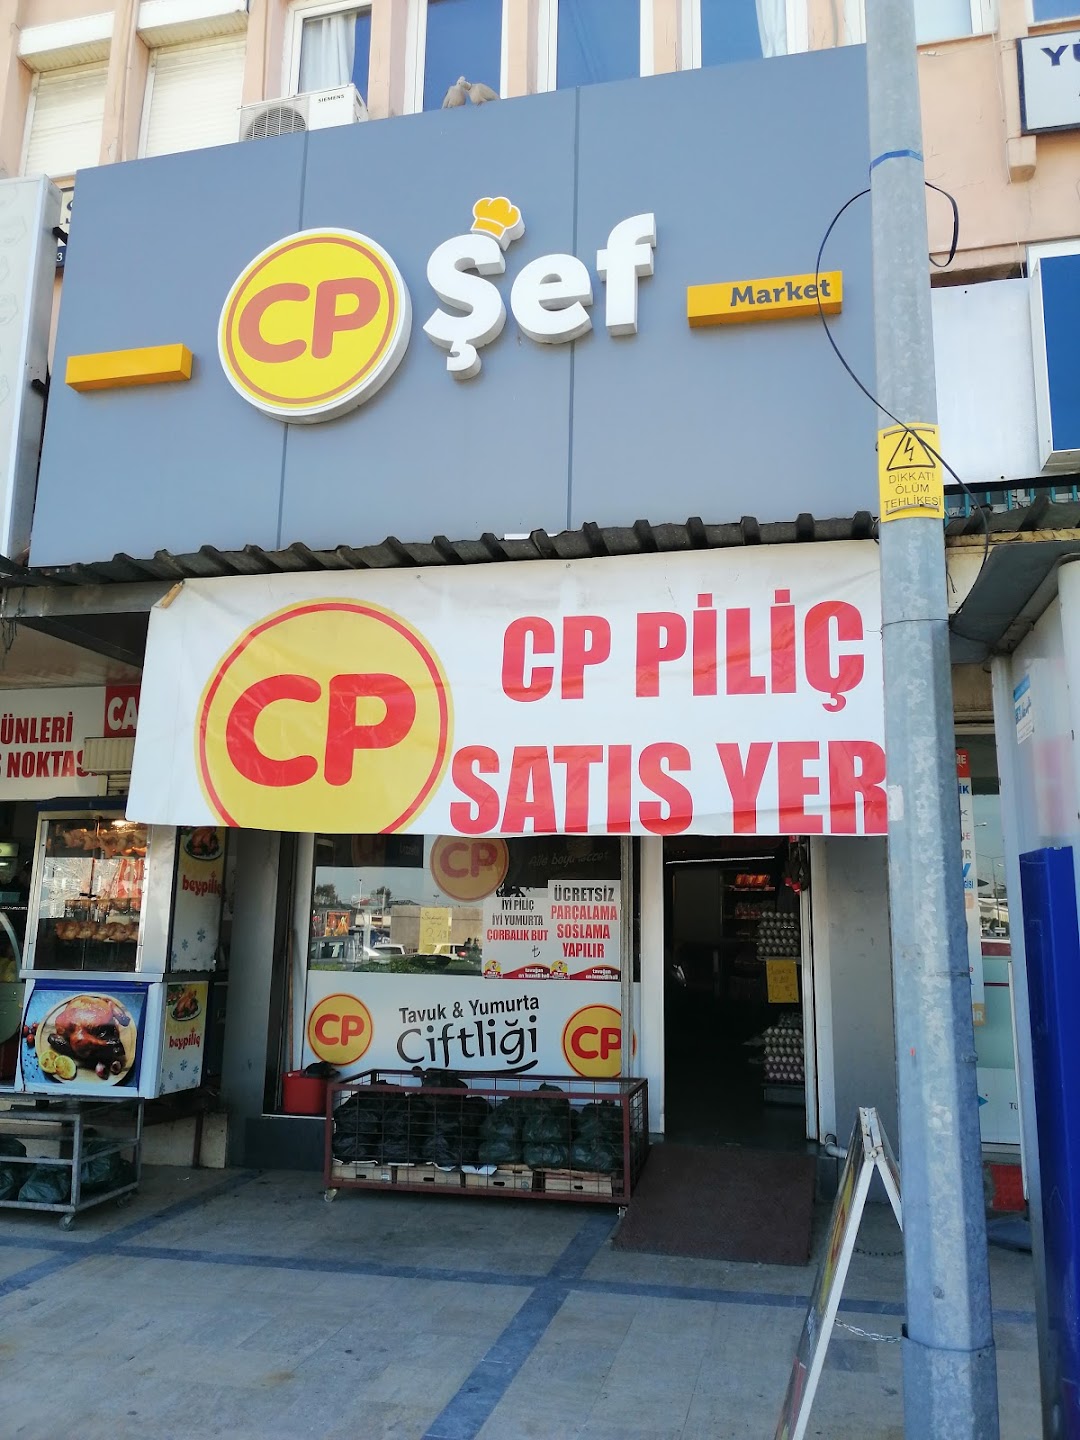 Cp ef ER-AY Pili Market